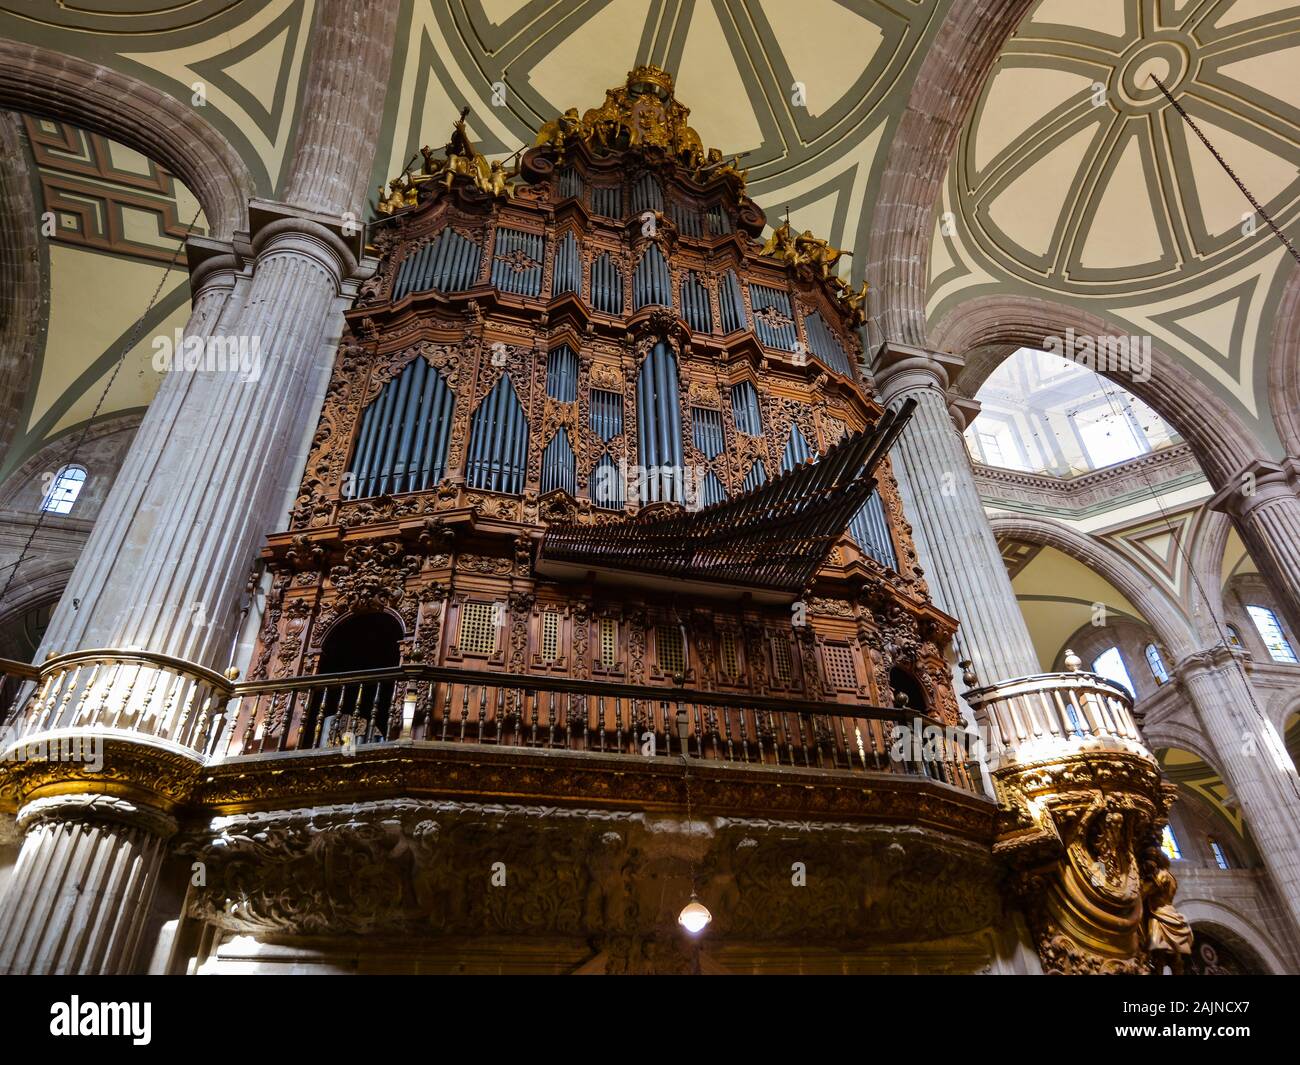 Organ at the Mexico City Metropolitan Cathedral - Mexico City, Mexico Stock Photo